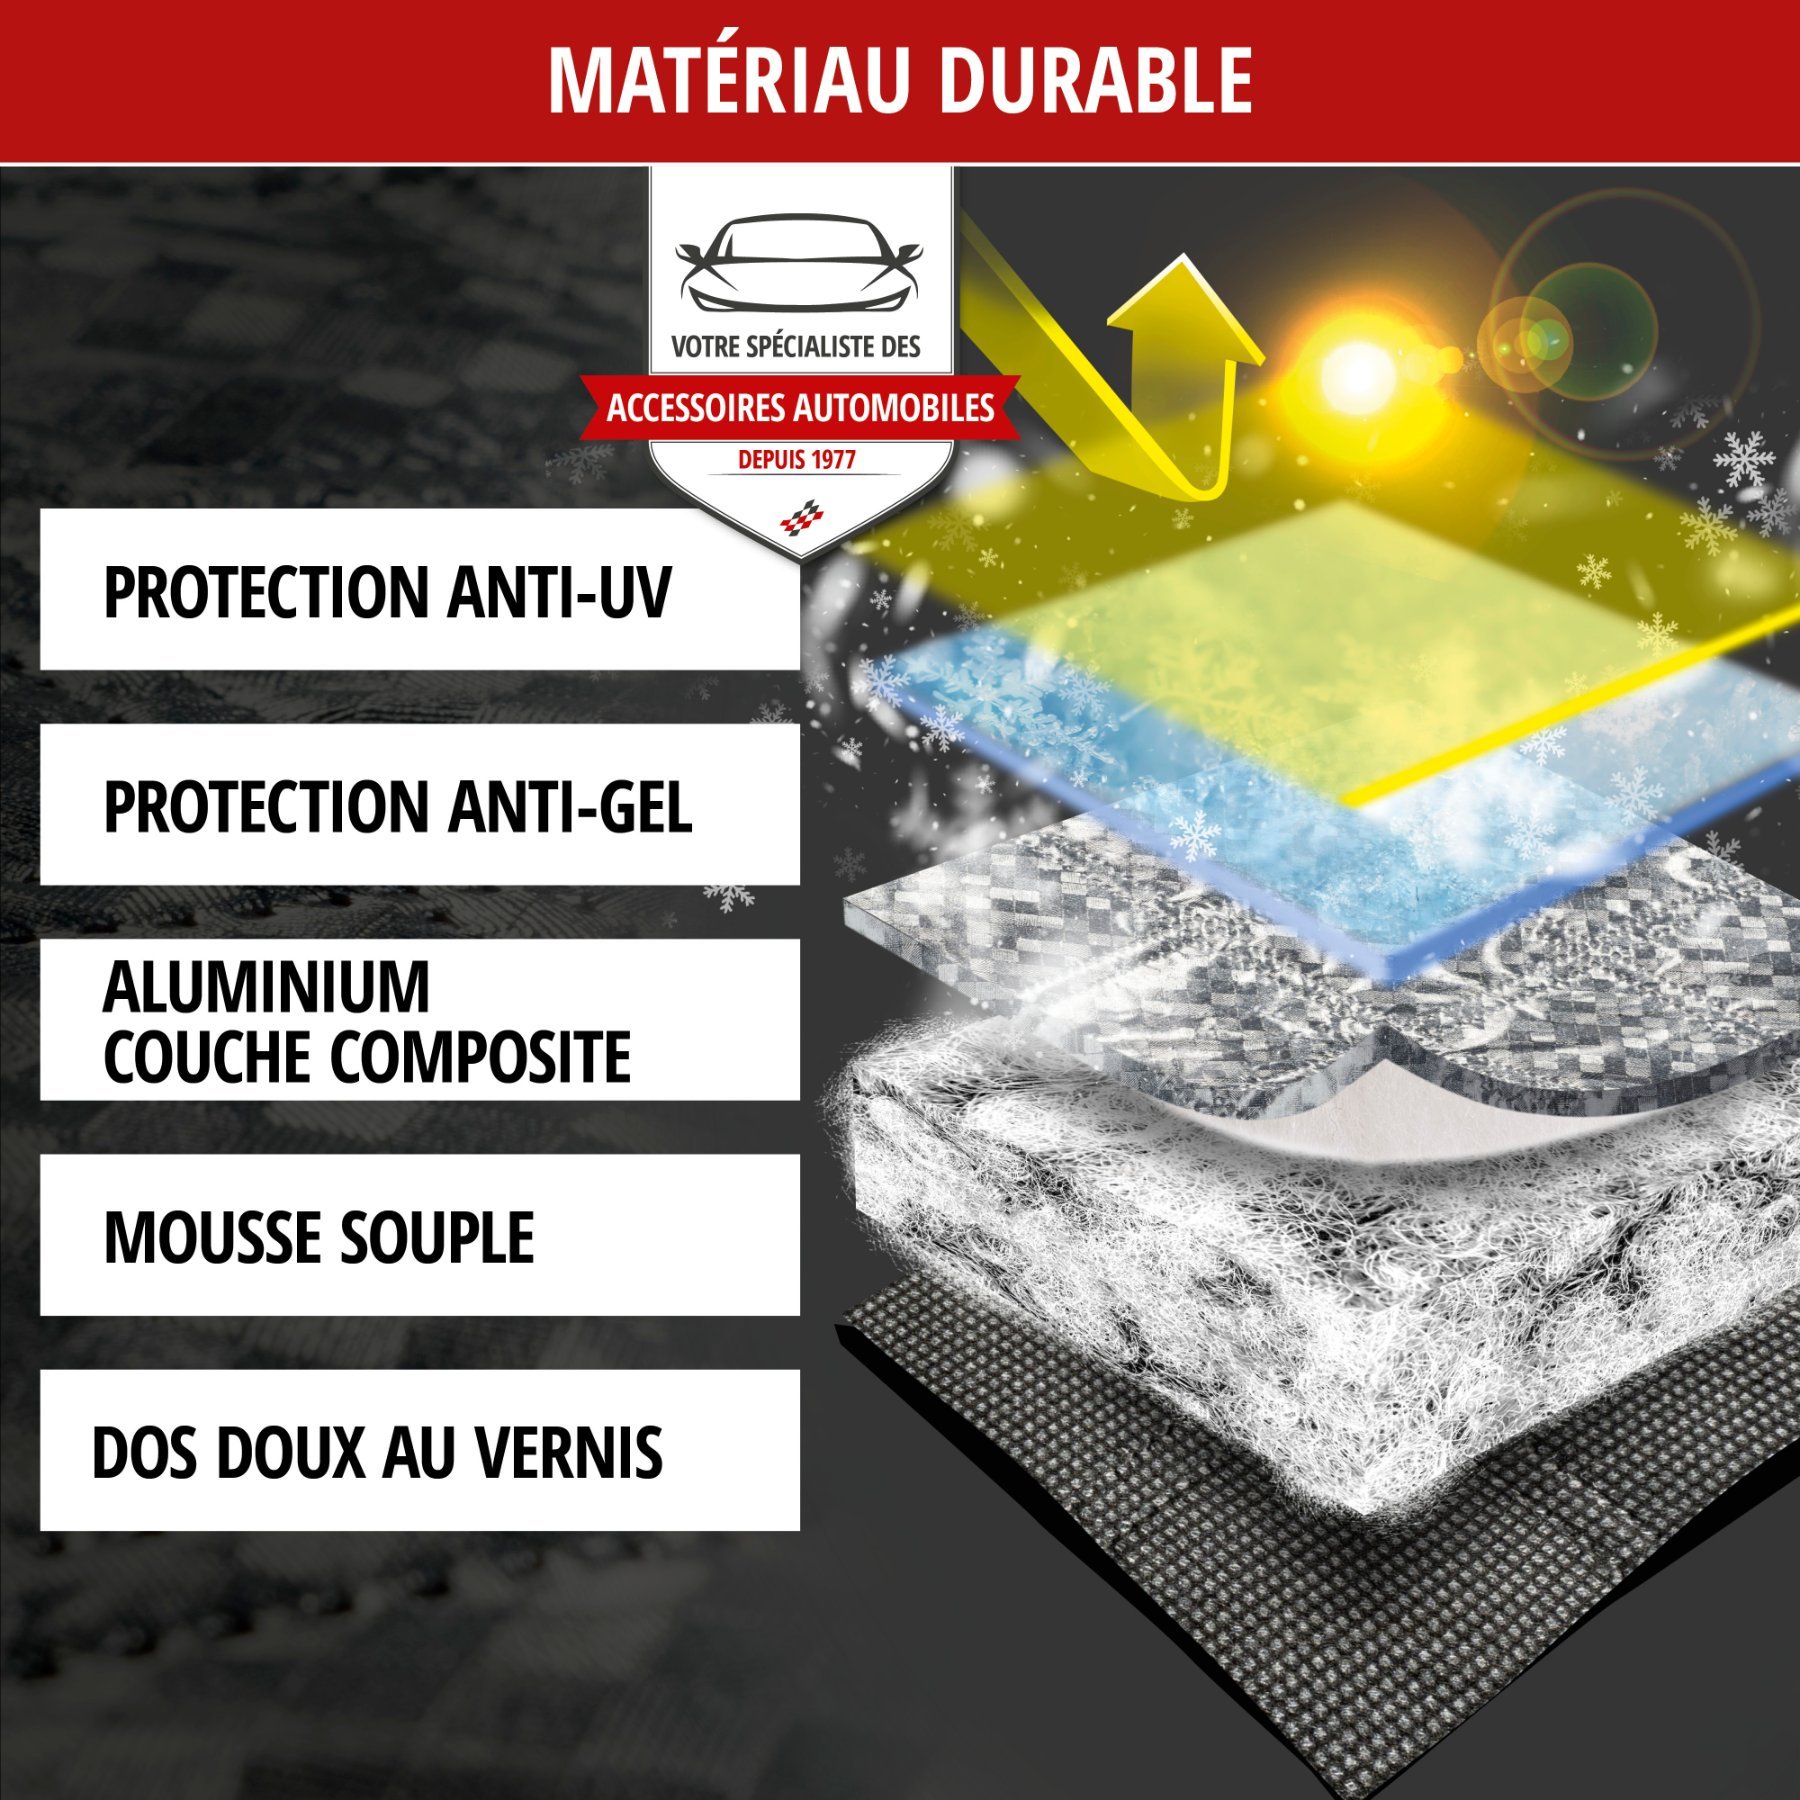 Protection thermique de pare-brise Premium avec couverture de rétroviseur latéral 147x120 cm